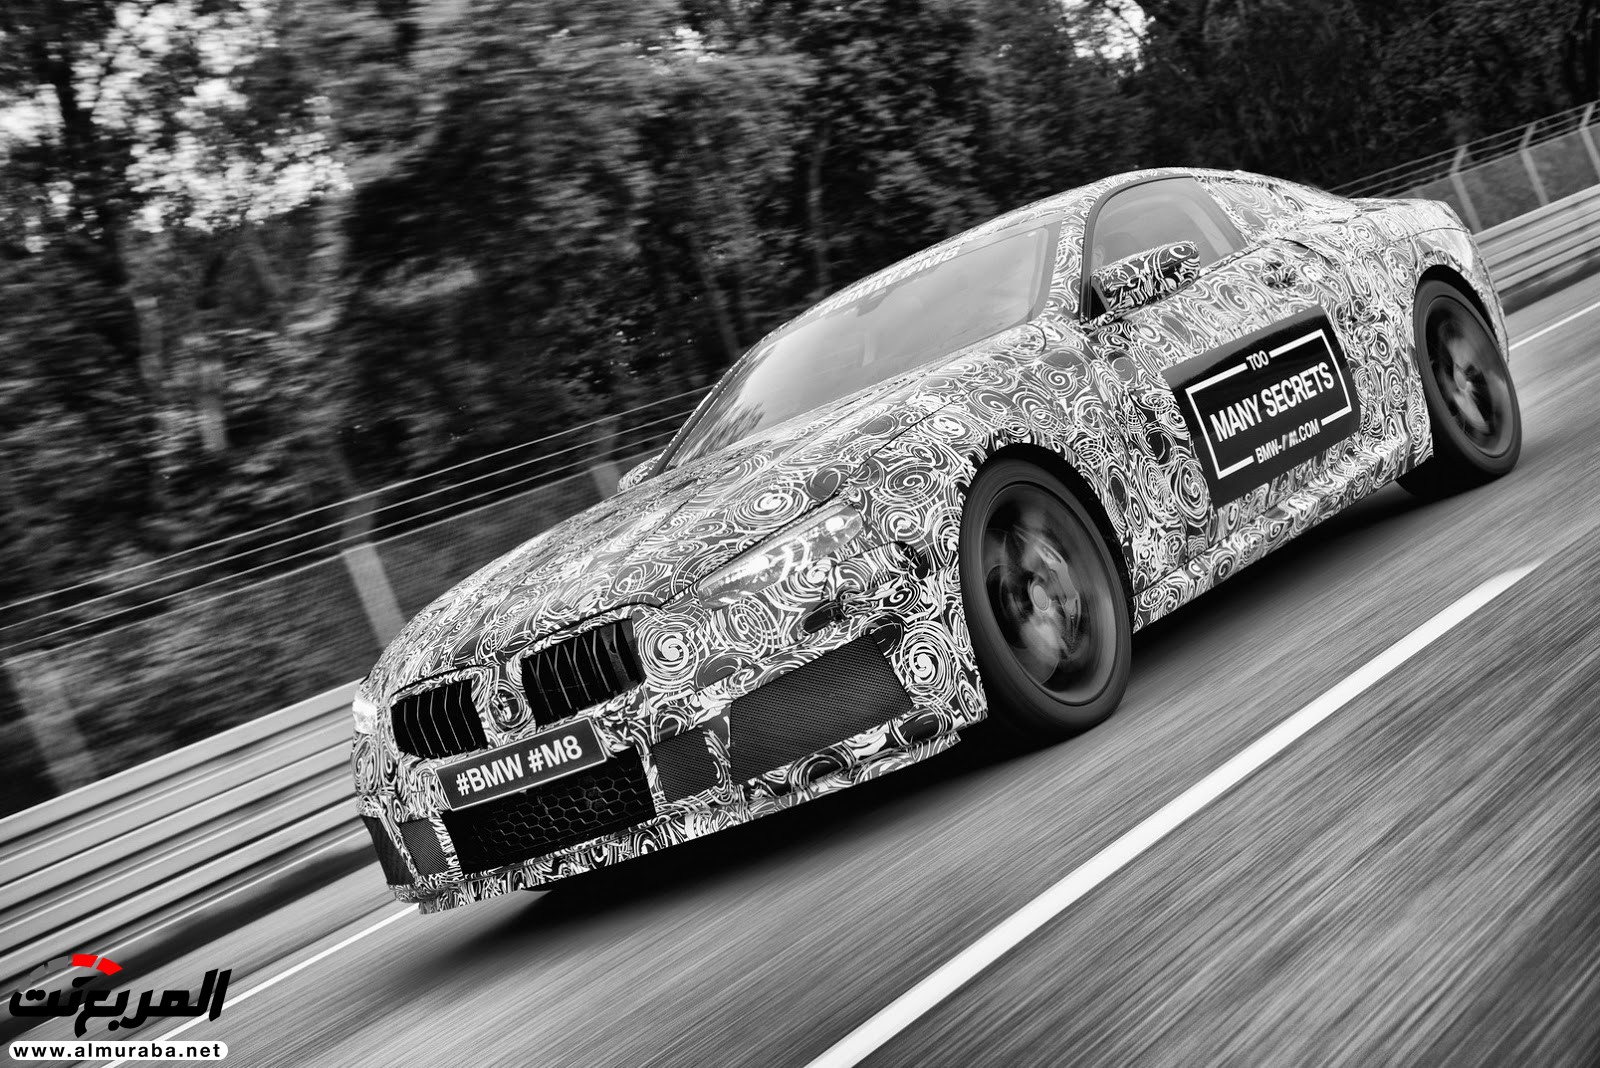 بي إم دبليو M8 يكشف عن نموذجها - وسيارة سباق الفئة الثامنة في الطريق 76